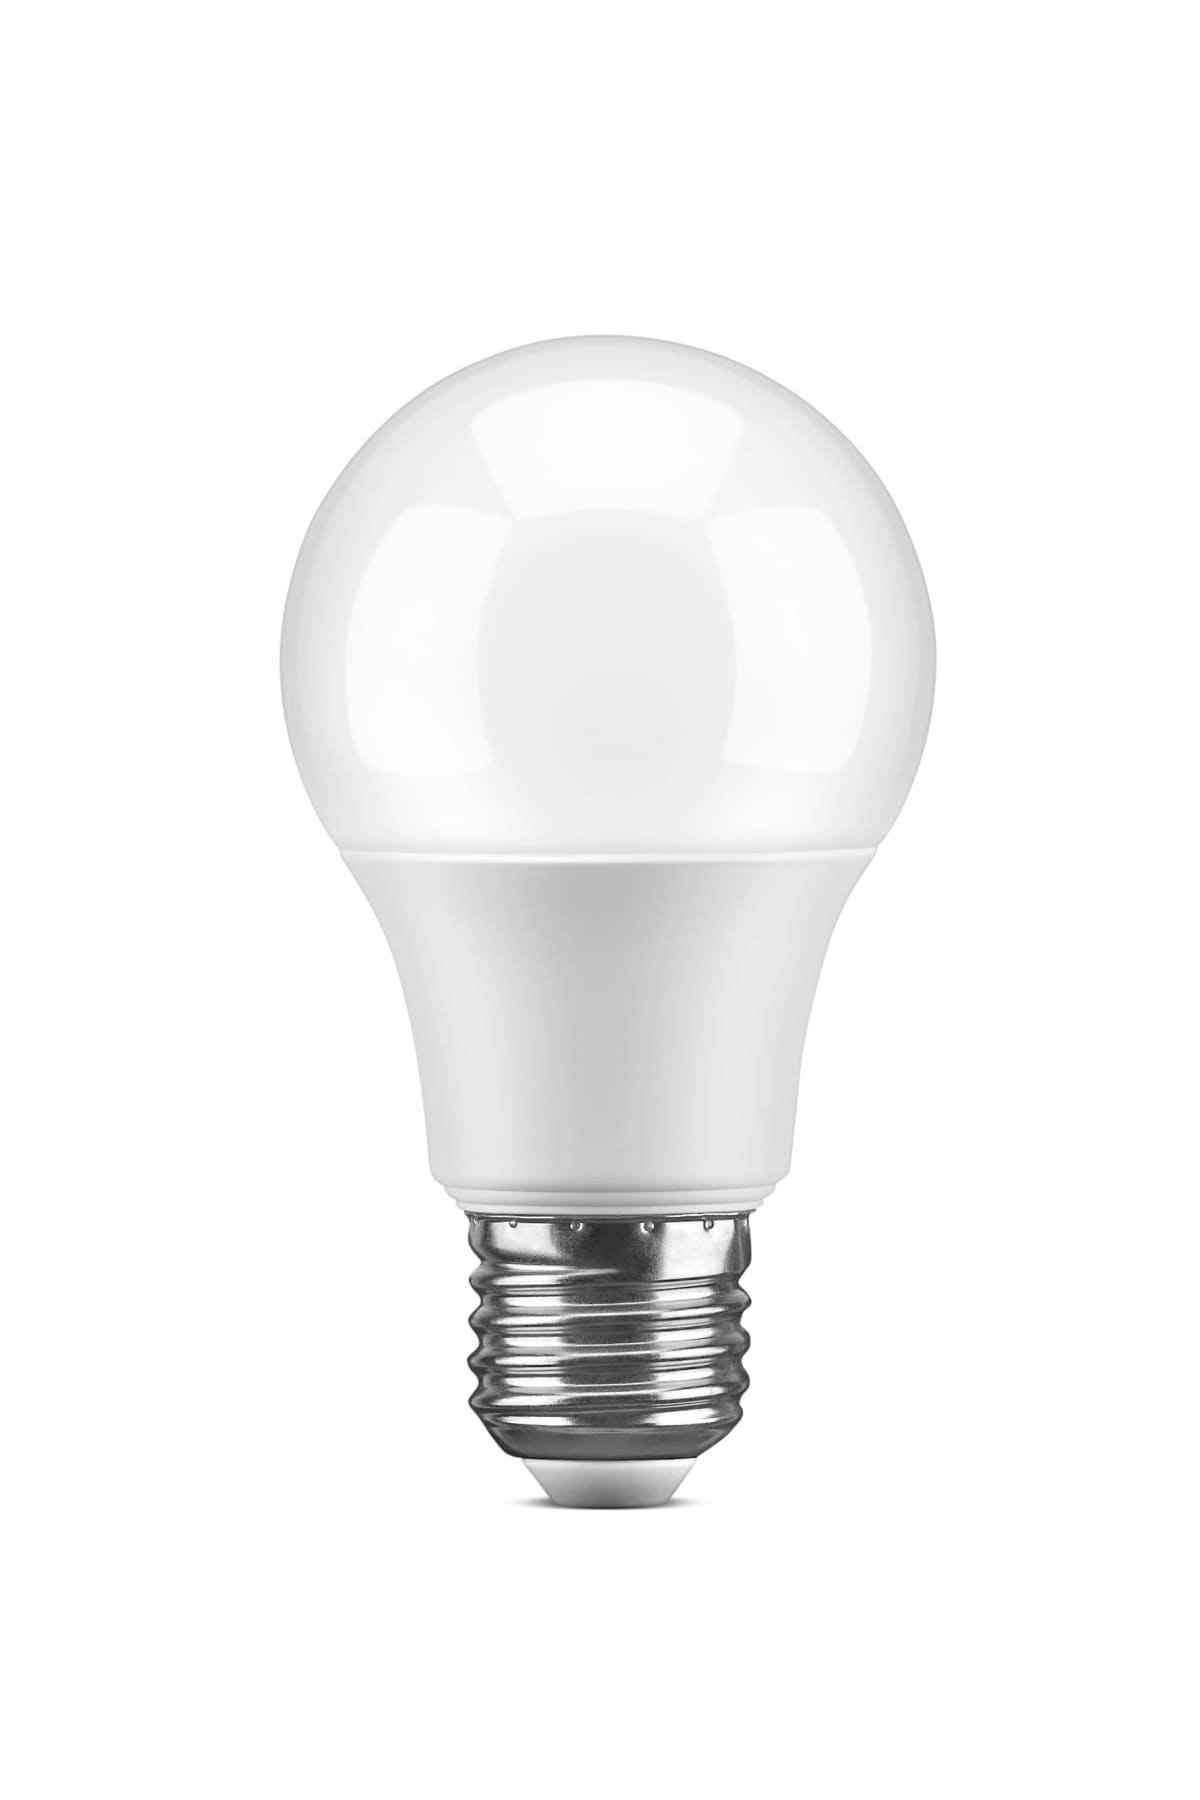 White LED light bulb, isolated on white background